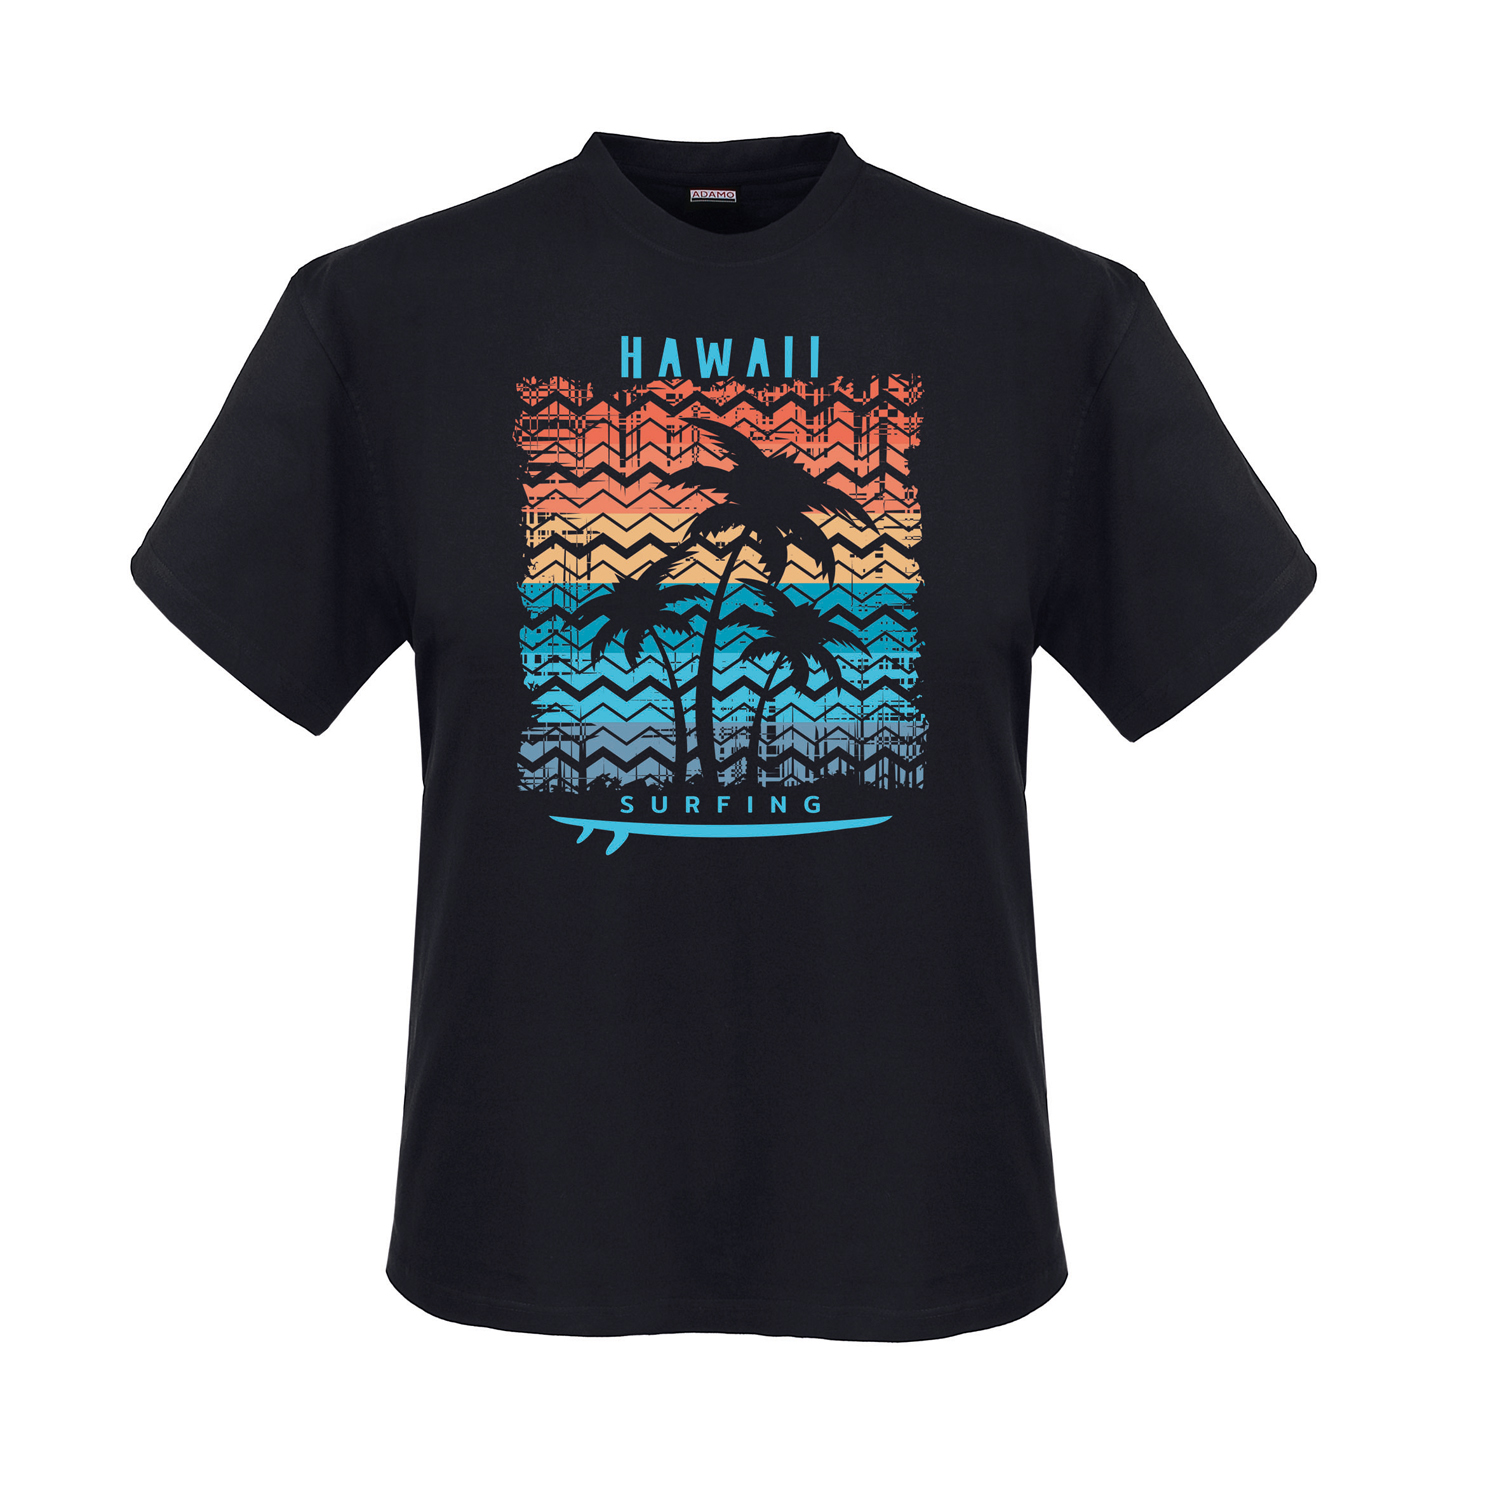 T-shirt noir avec empreinte by ADAMO en grandes tailles jusqu'au 12XL - Série "HAWAII"